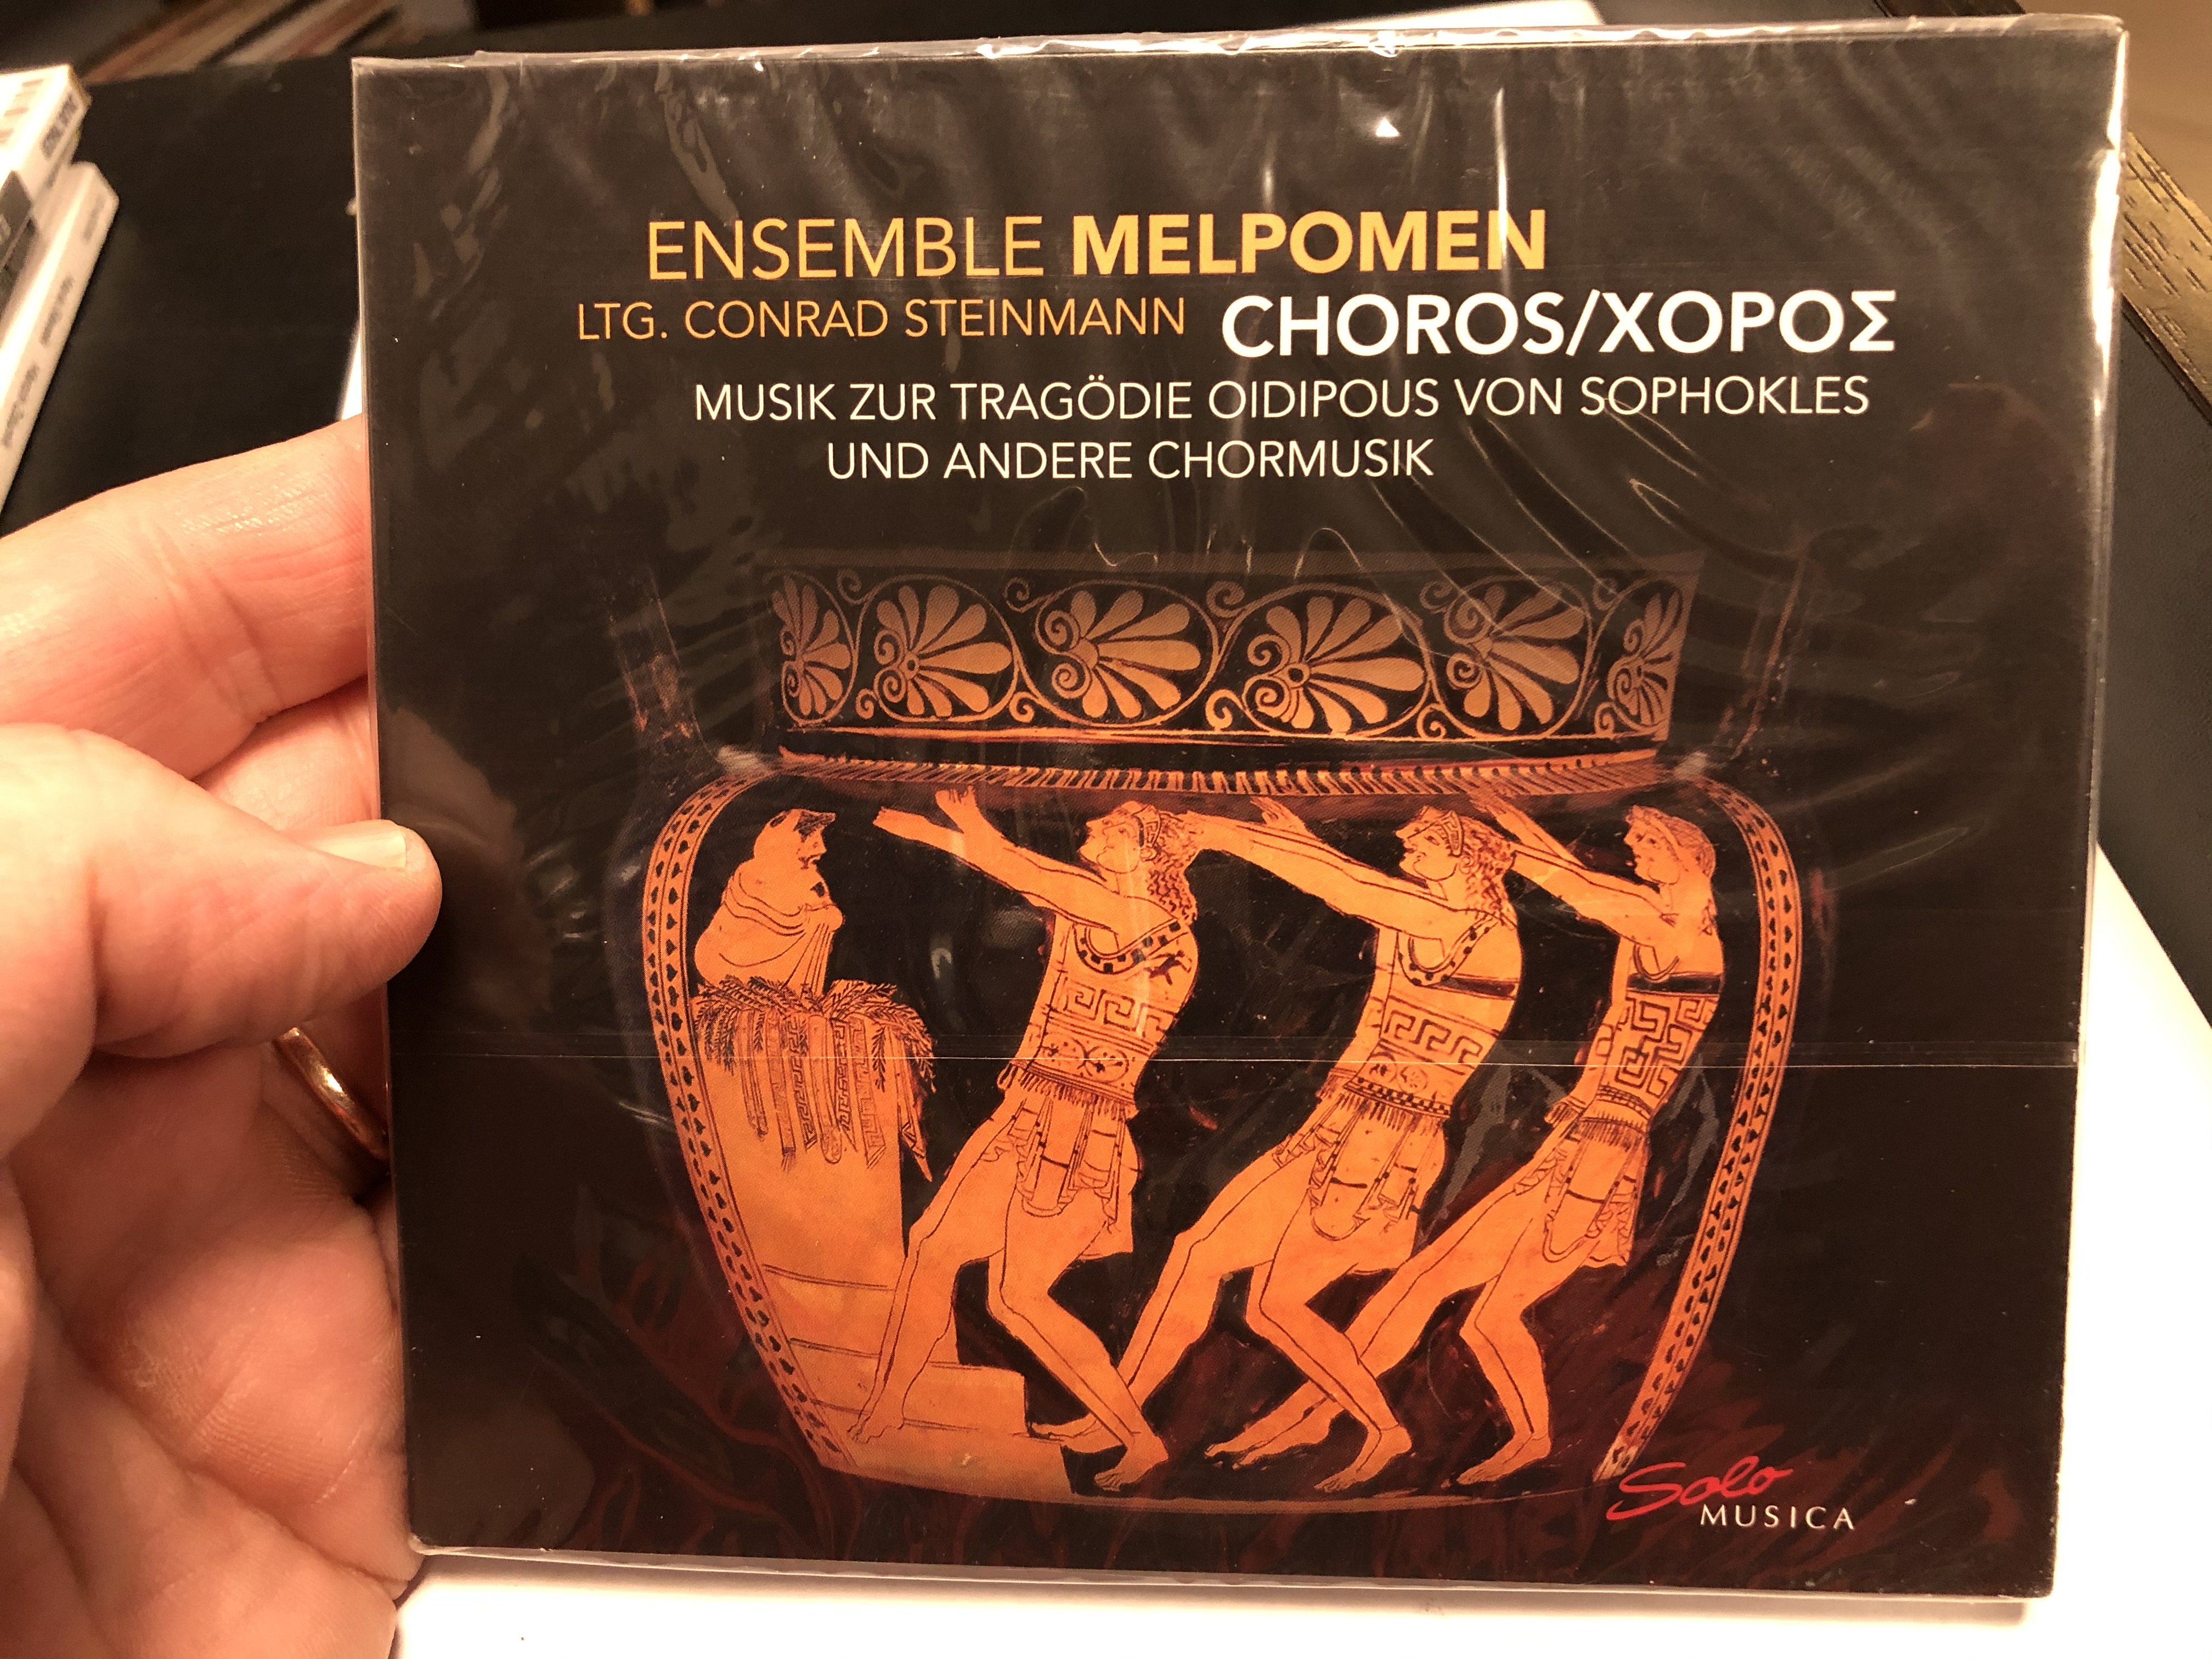 ensemble-melpomen-ltg.-conrad-stenimann-choros-musik-zur-tragodie-oidipous-von-sophokles-und-andere-chormusik-solo-musica-audio-cd-2020-sm-317-1-.jpg